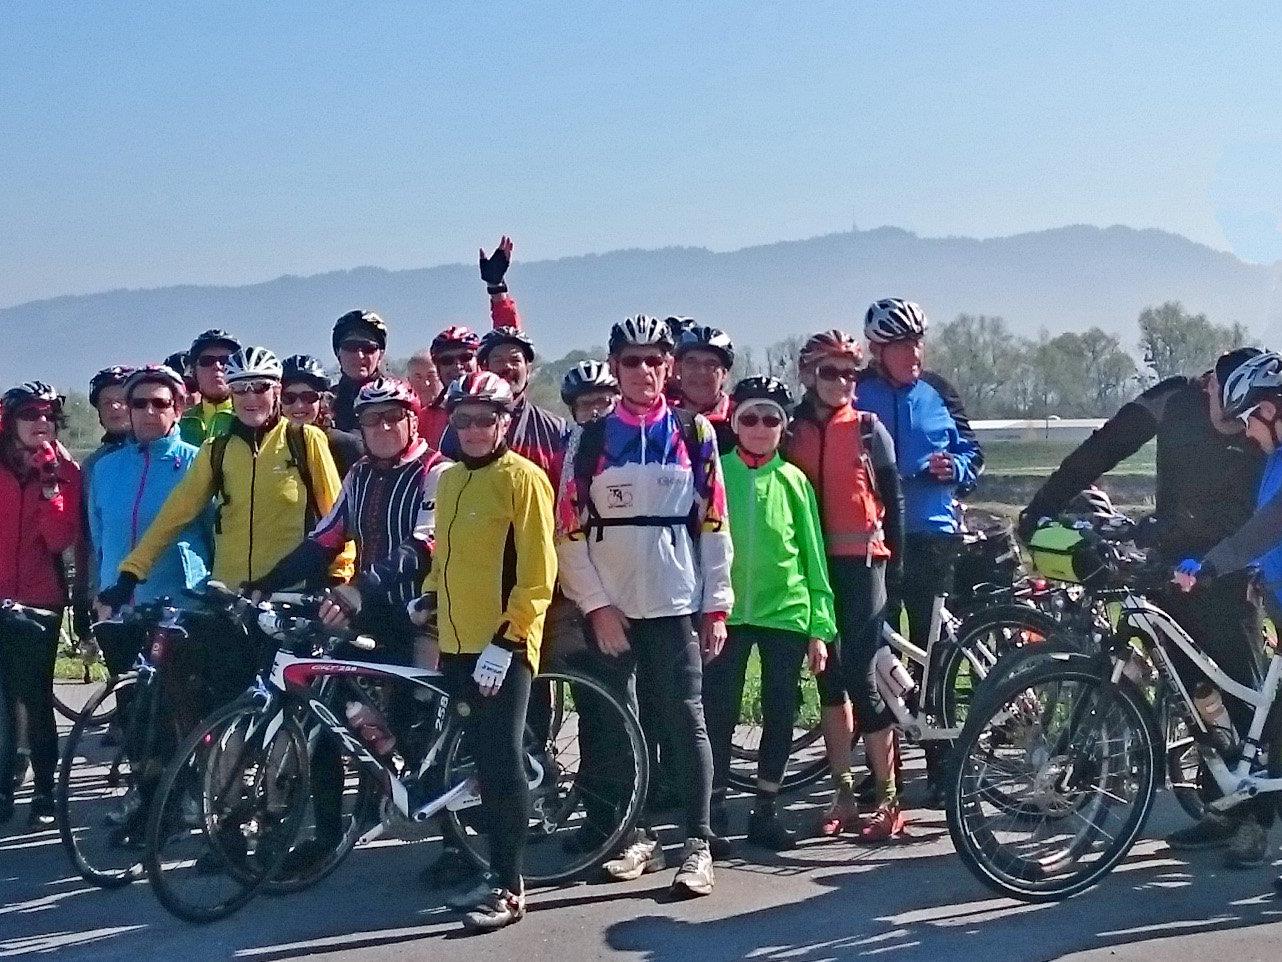 Radteam per pedales beim Einradeln im Rheindelta